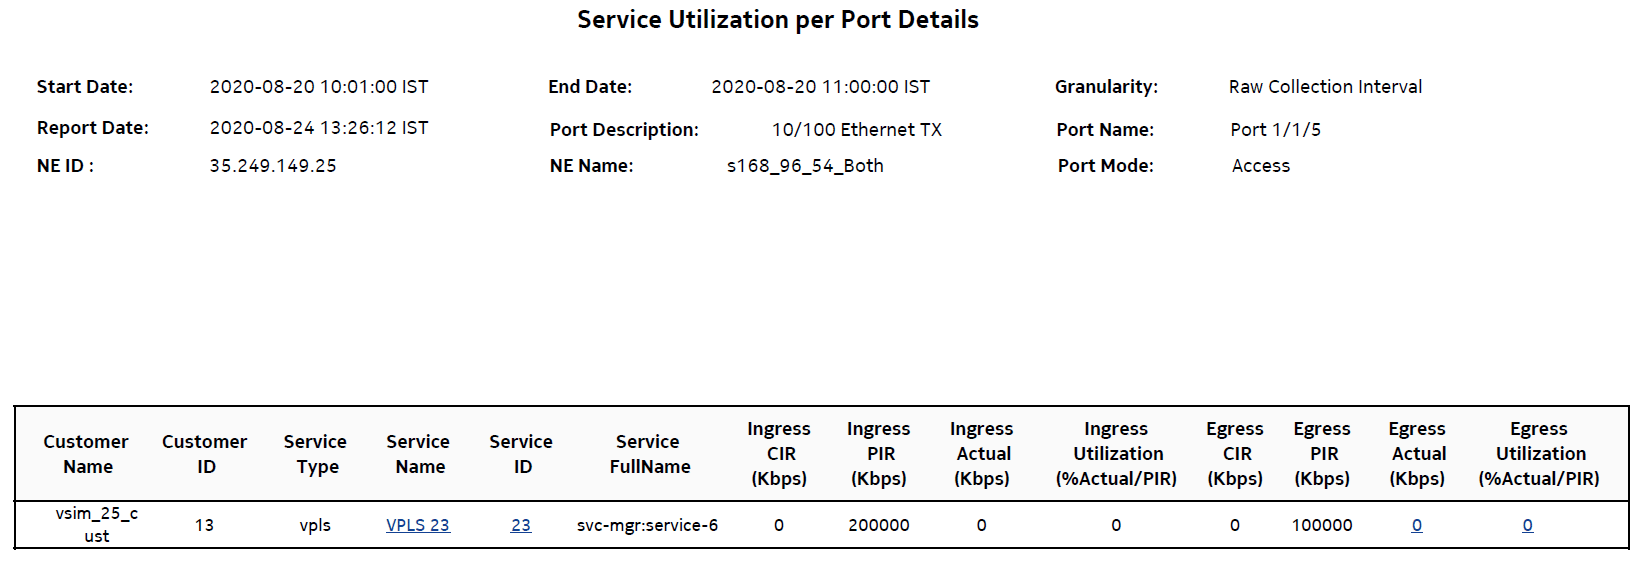 Service Utilization per port